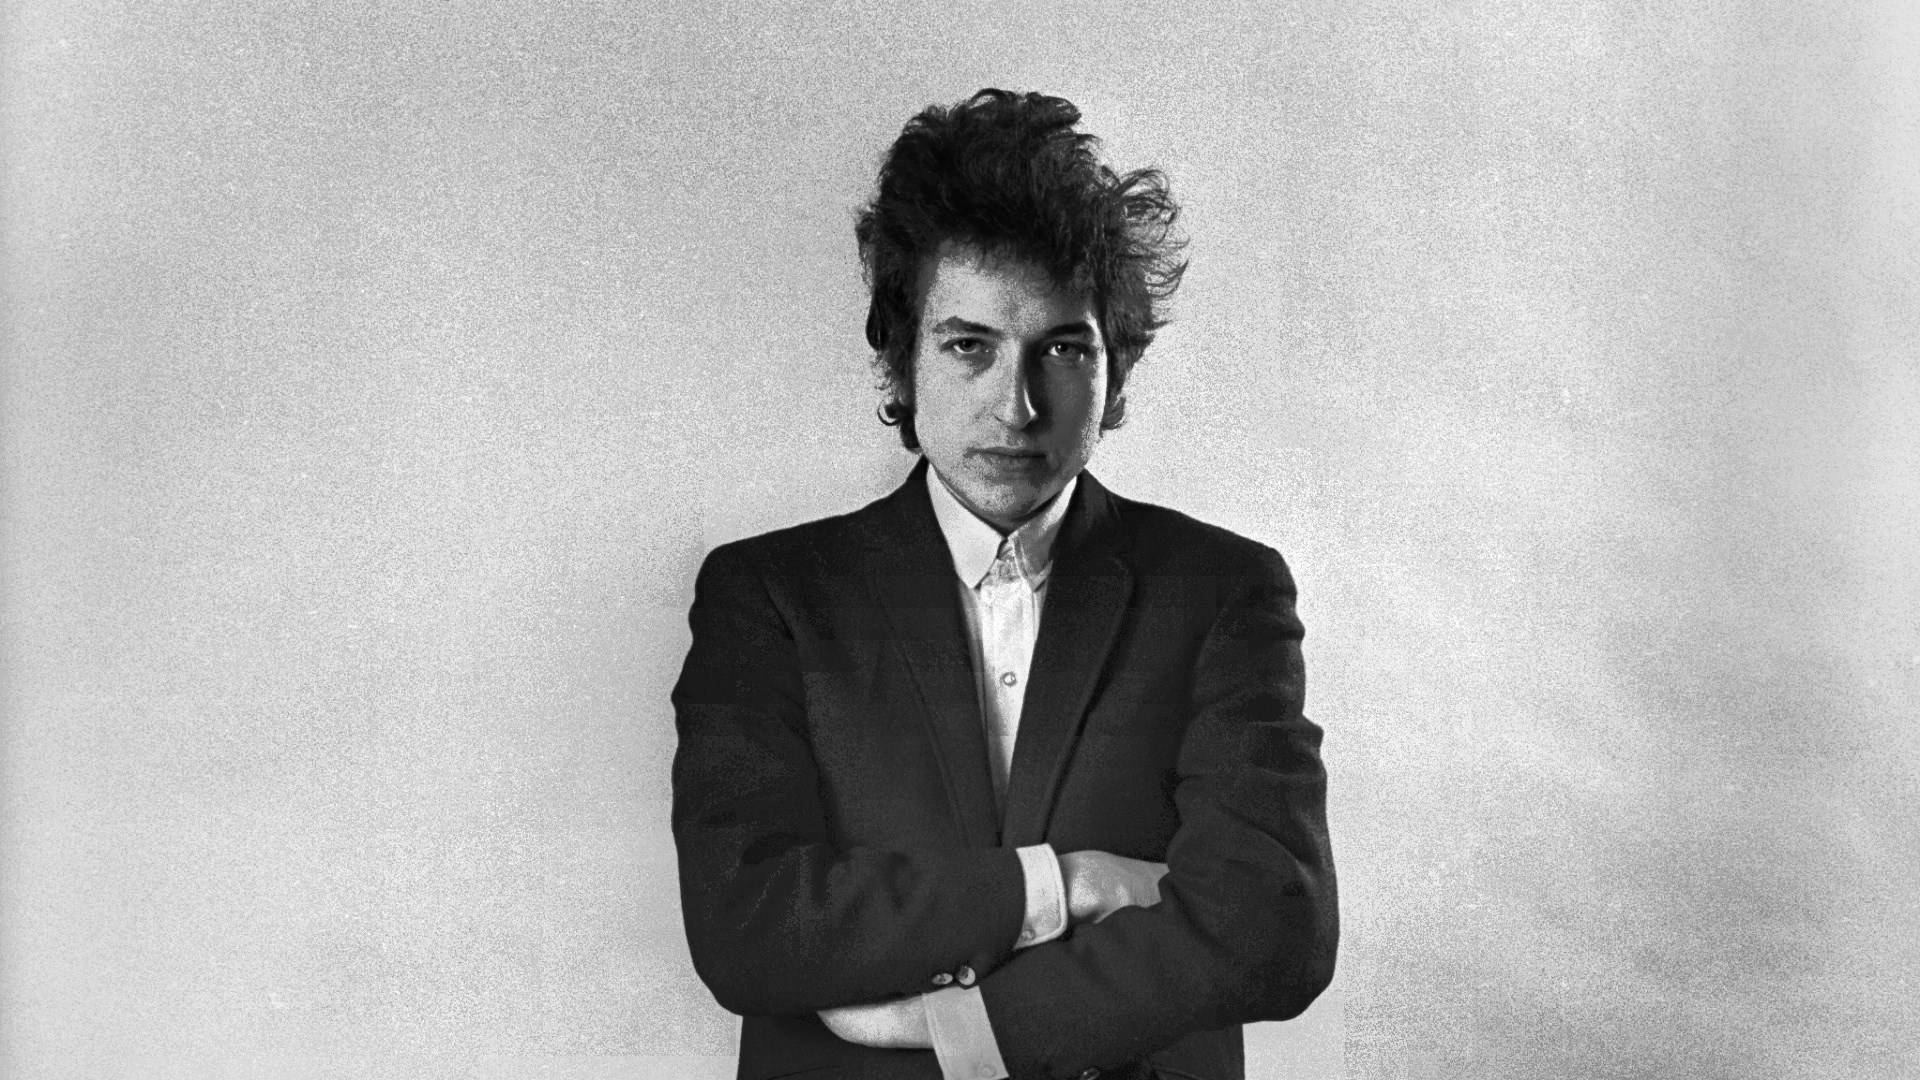 Bob Dylan Singer Songwriter Portrait Wallpaper